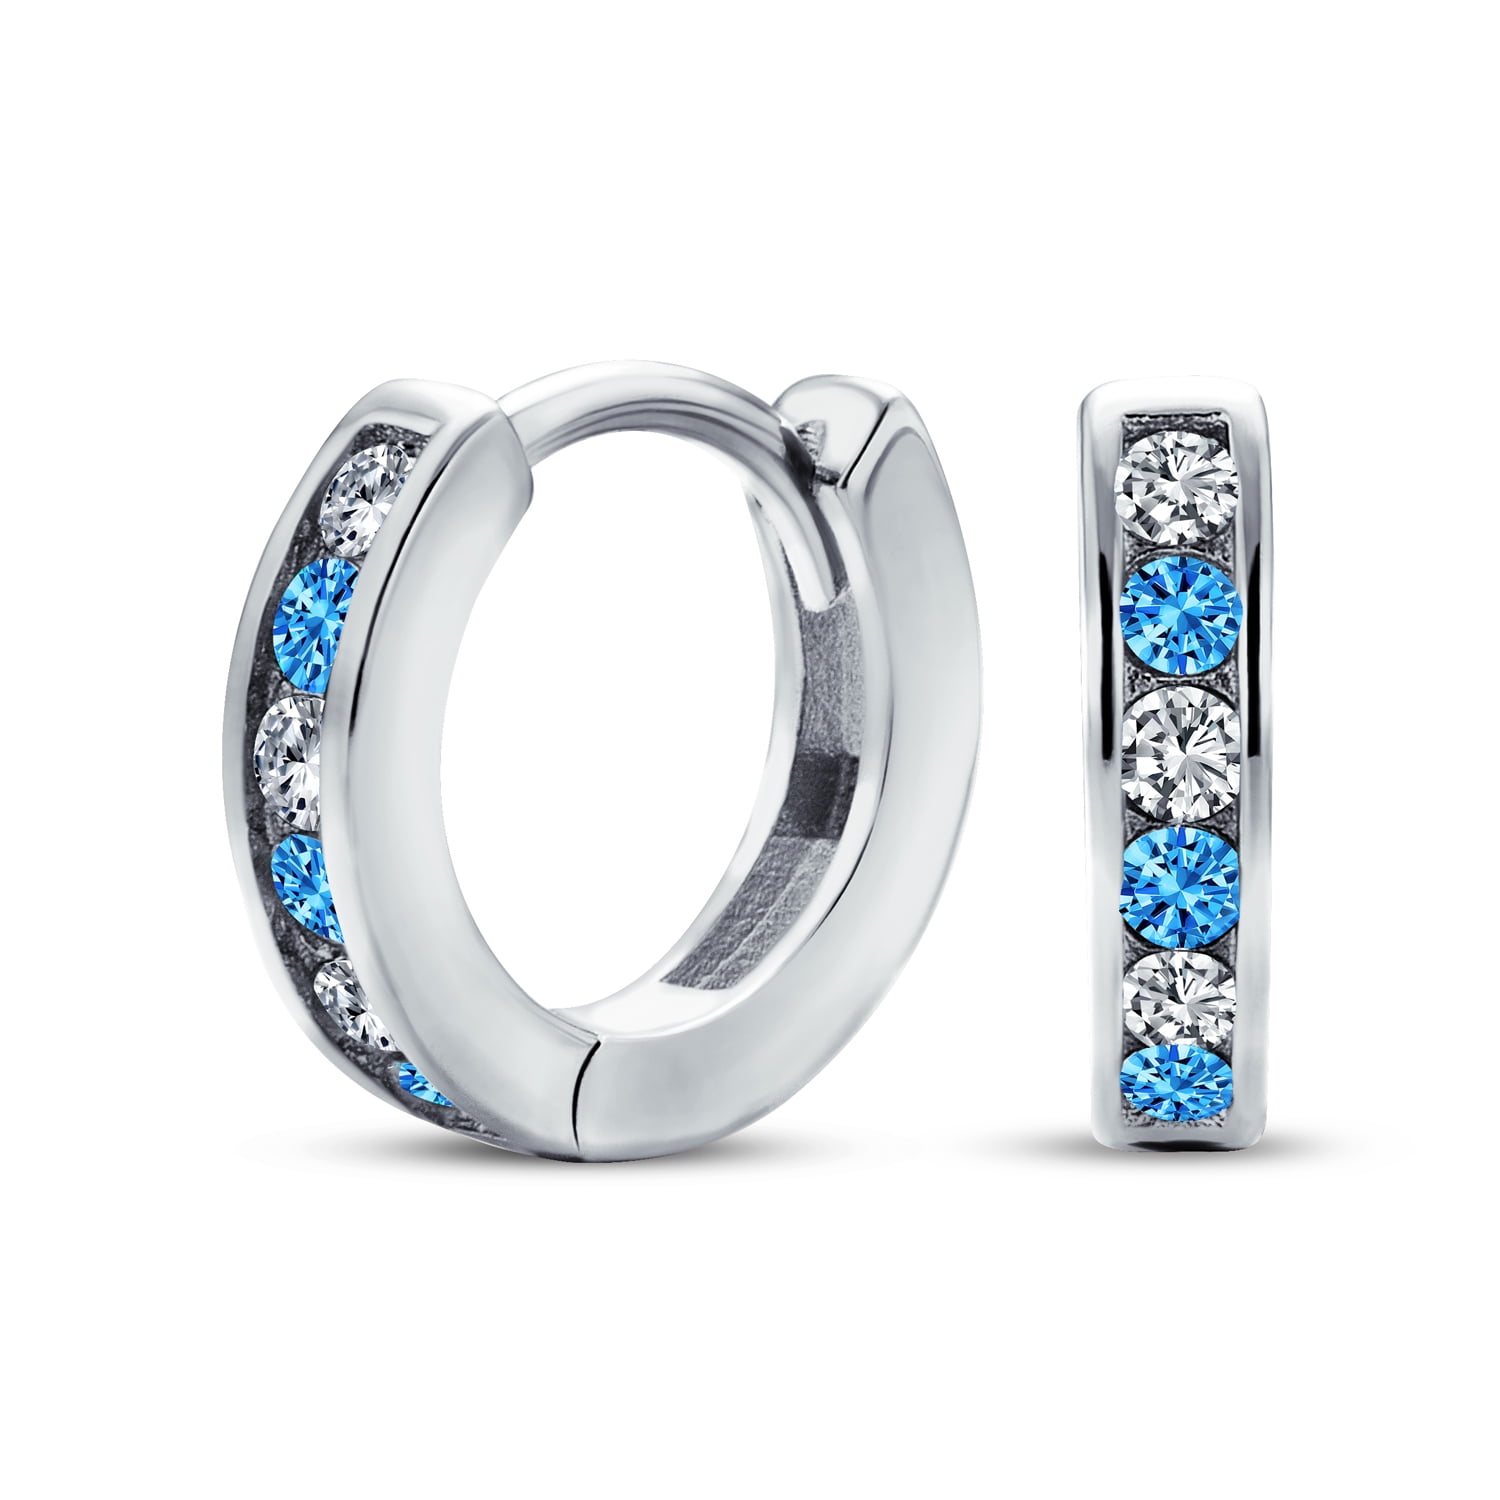 Sterling Silver W/ Rhodium-plated Diamond & Swiss Blue Topaz Earring Jacket 0.5IN Diameter